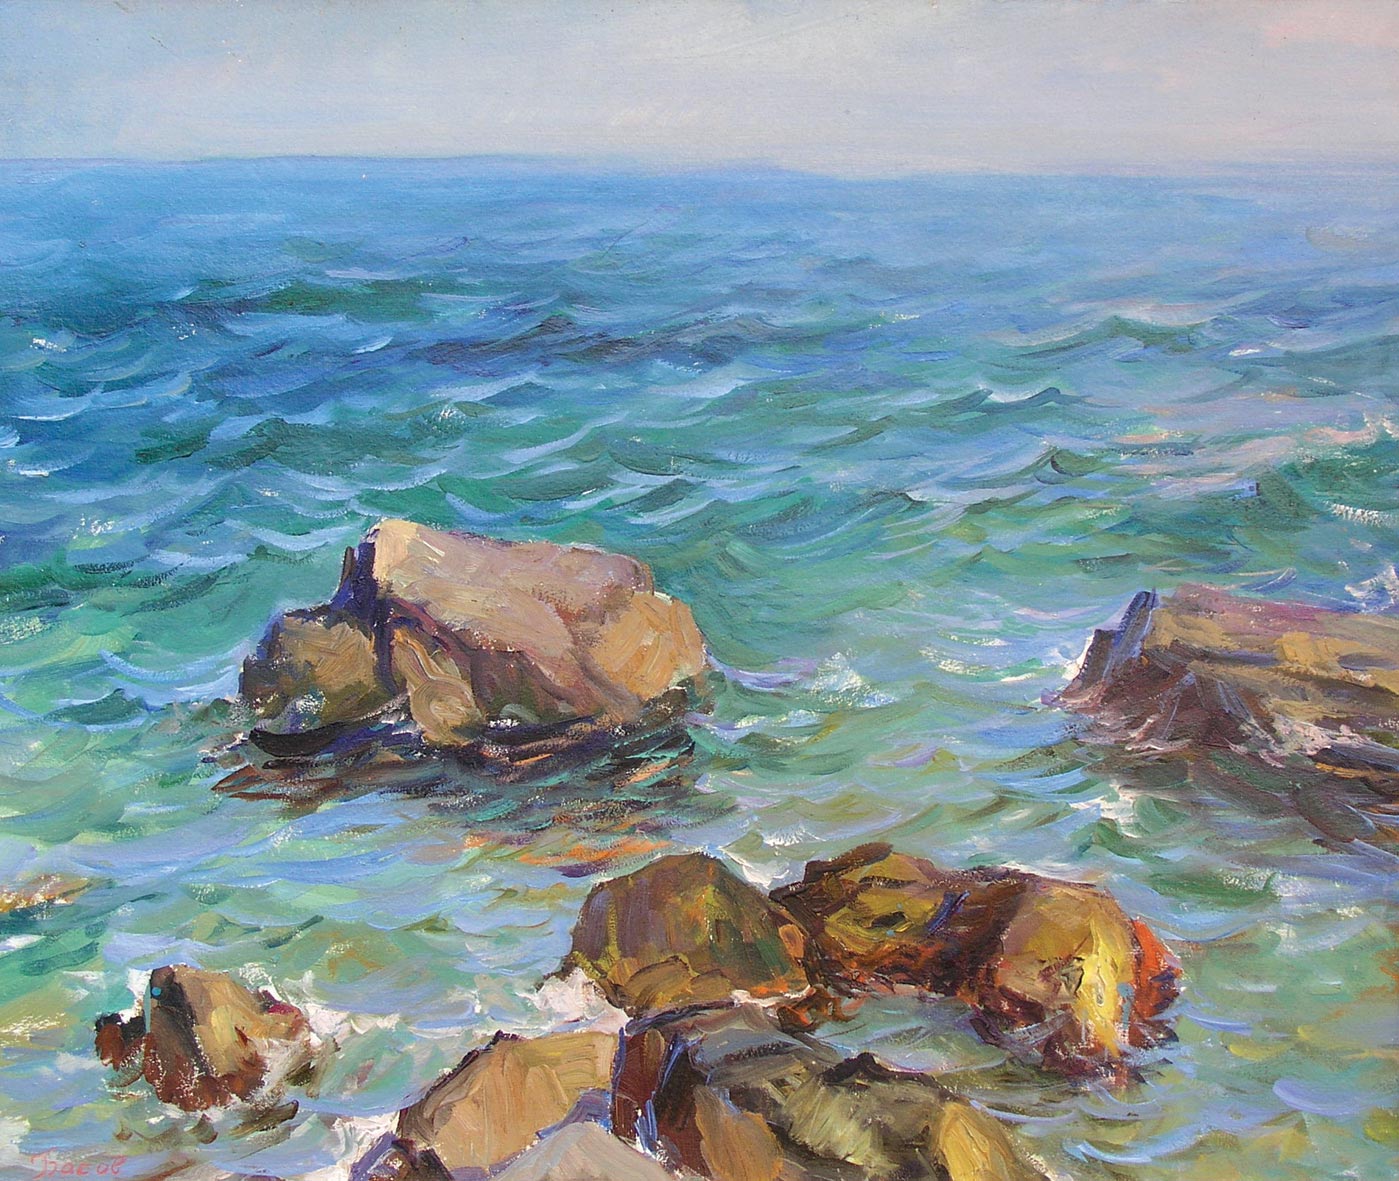 "Літнє море", 1960